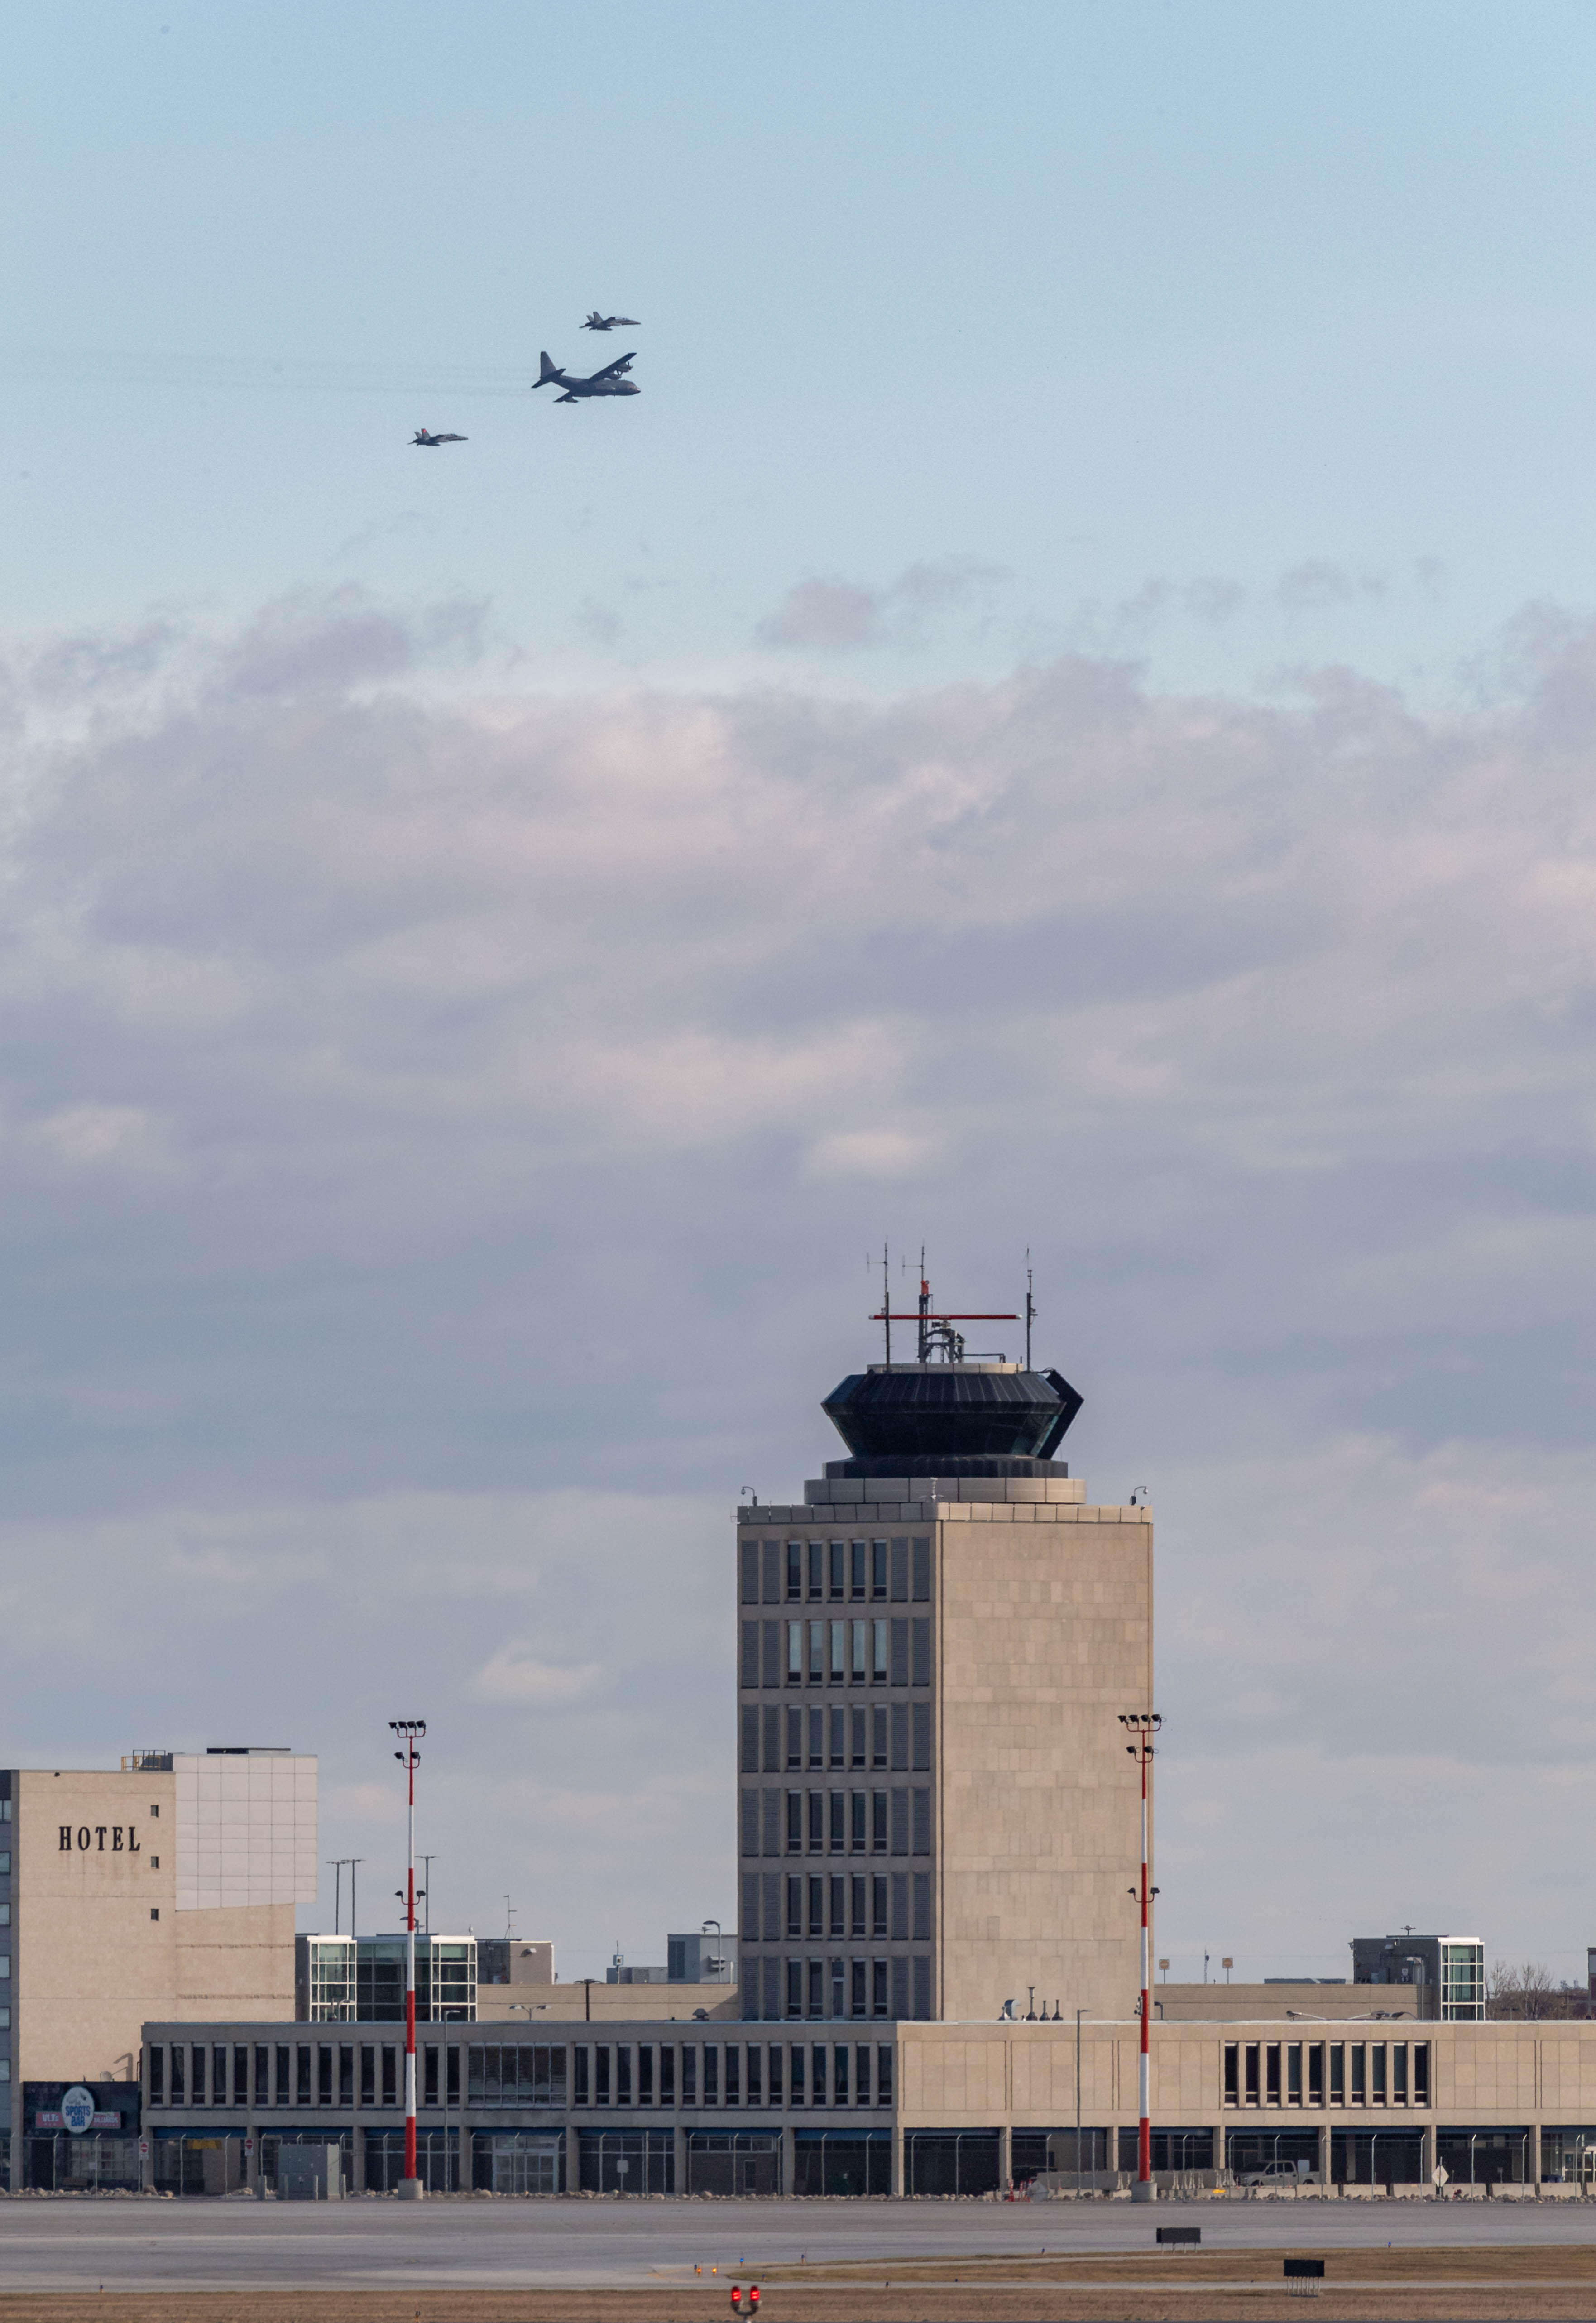 Un avion CC-130 Hercules vole en formation avec deux chasseurs CF-188 Hornet au-dessus de Winnipeg le 13 octobre 2020 afin de marquer la 60e année de service de l’aéronef dans l’Aviation royale canadienne. PHOTO : Caporal Darryl Hepner